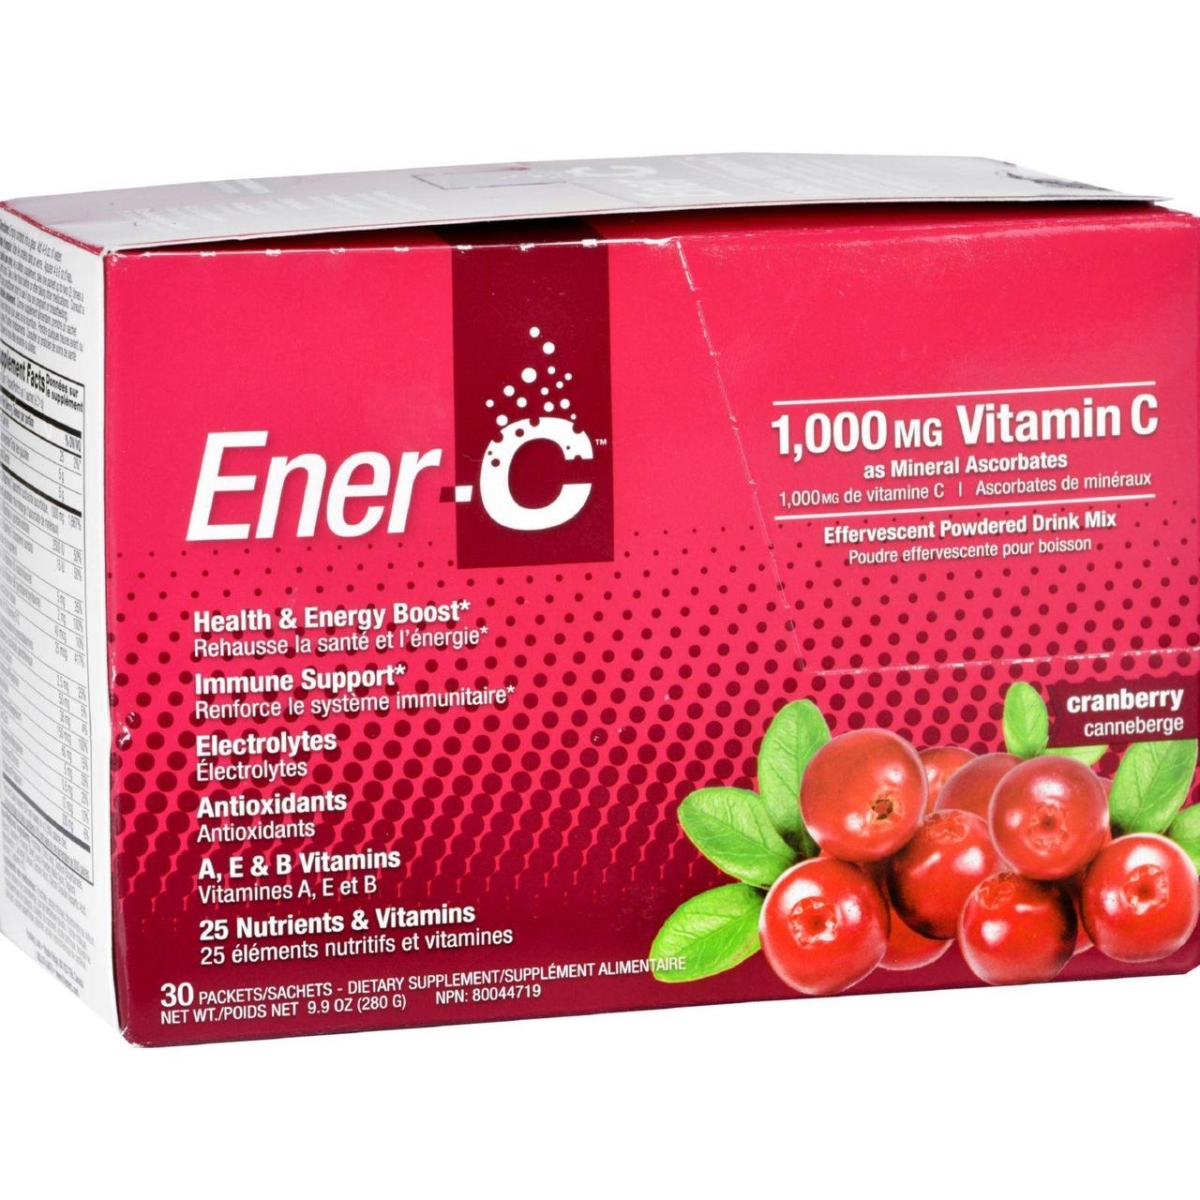 Hg1631431 1000 Mg Vitamin Drink Mix - Cranbeery, 30 Packet